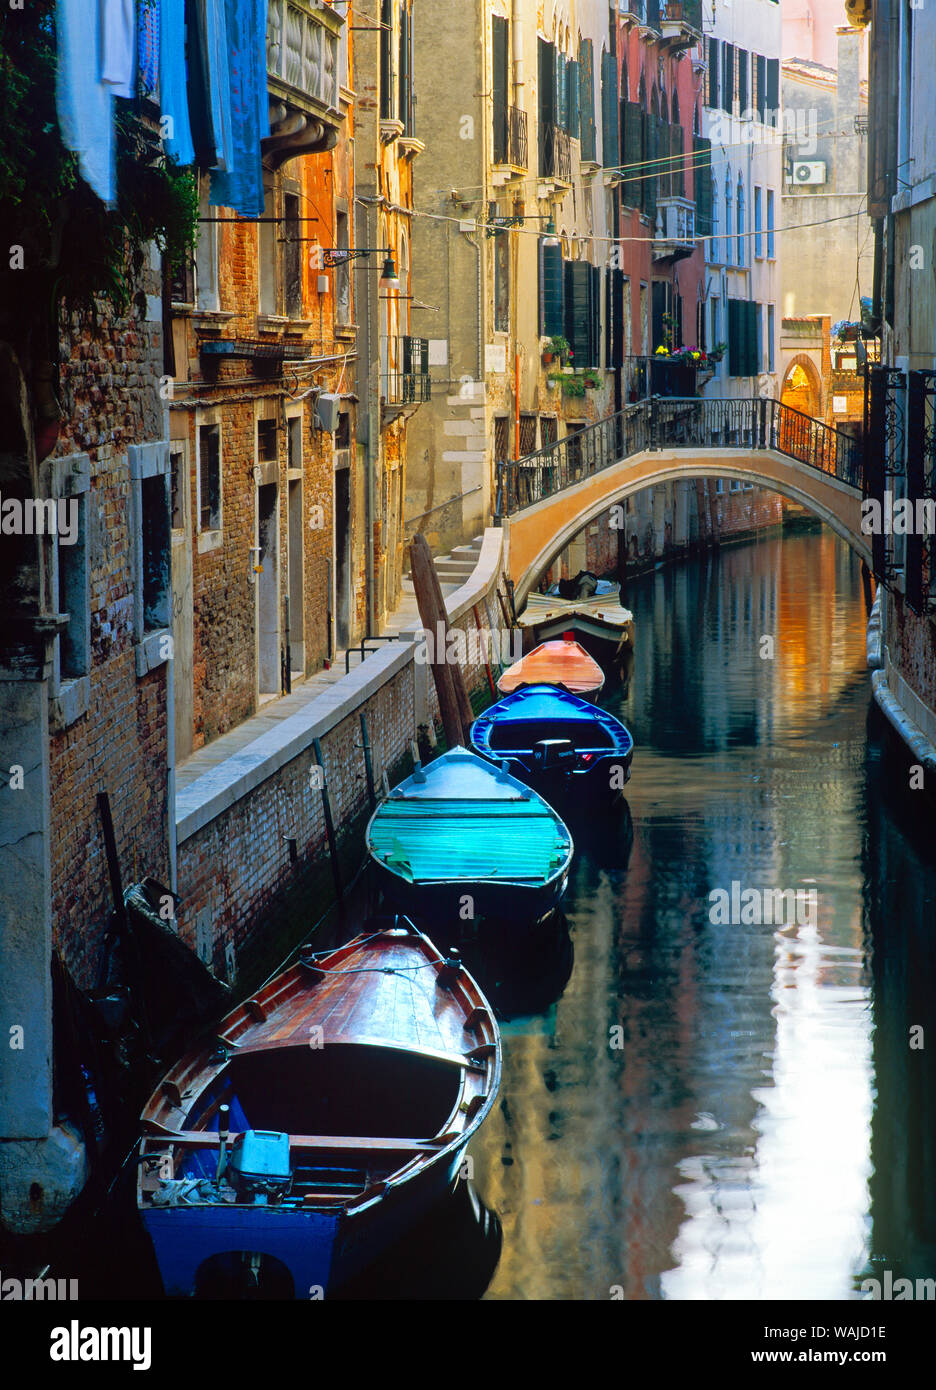 L'Italia, Venezia. Gondole ormeggiate nel canale. Credito come: Jim Nilsen Jaynes / Galleria / DanitaDelimont.com Foto Stock